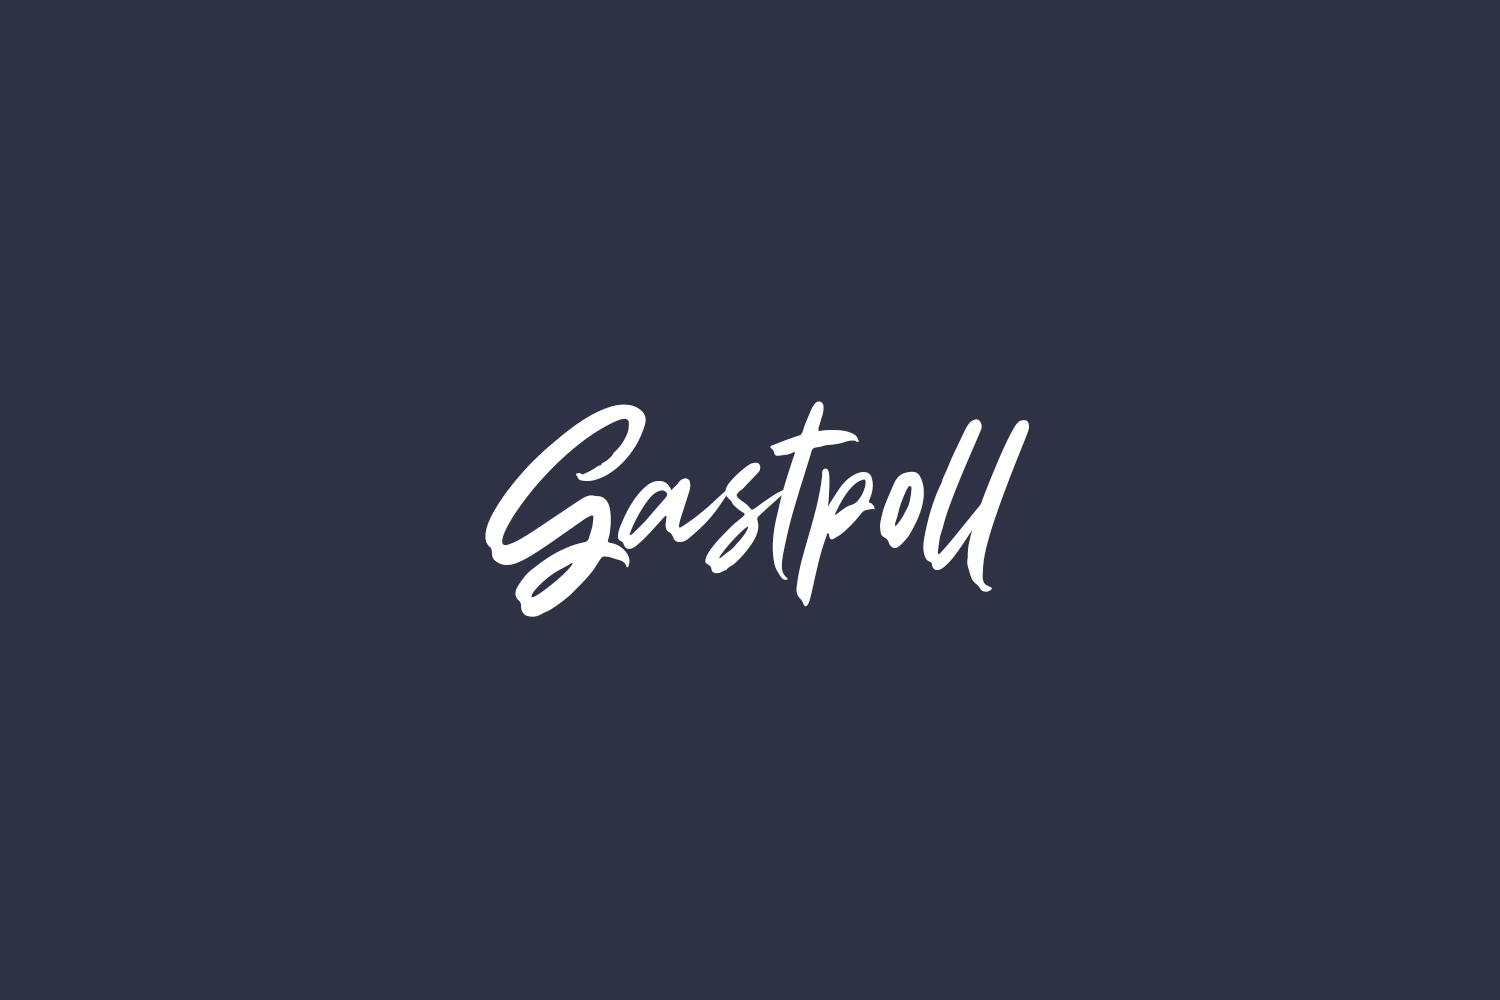 Gastpoll Free Font